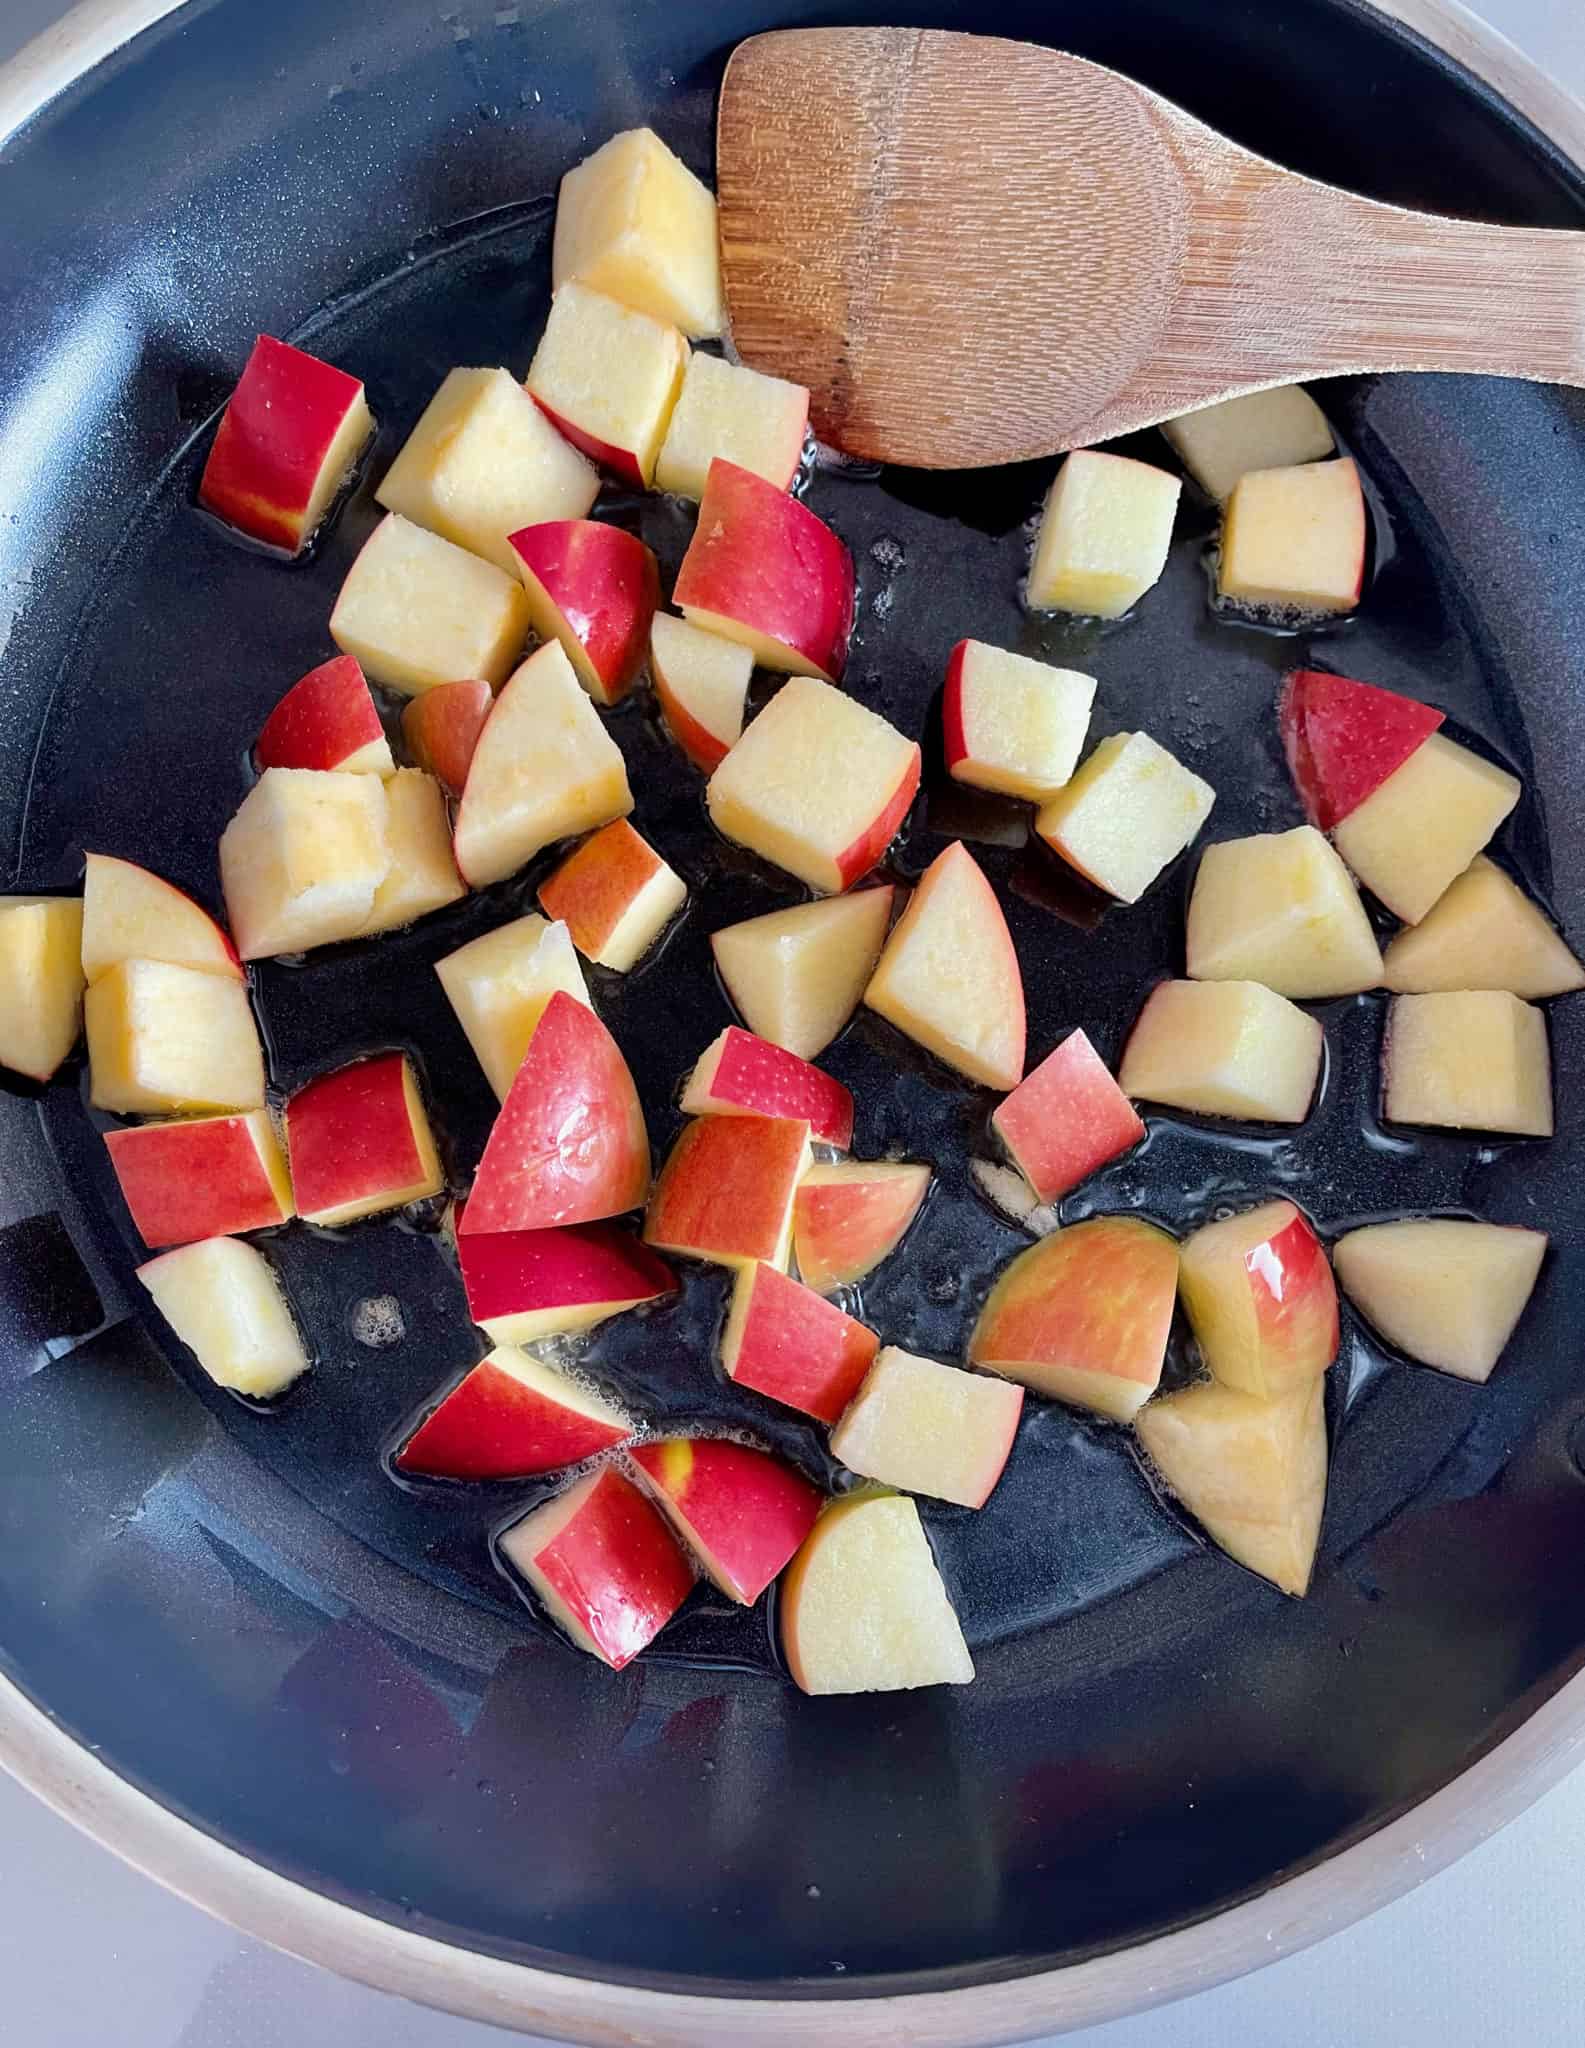 Cut apples in skillet